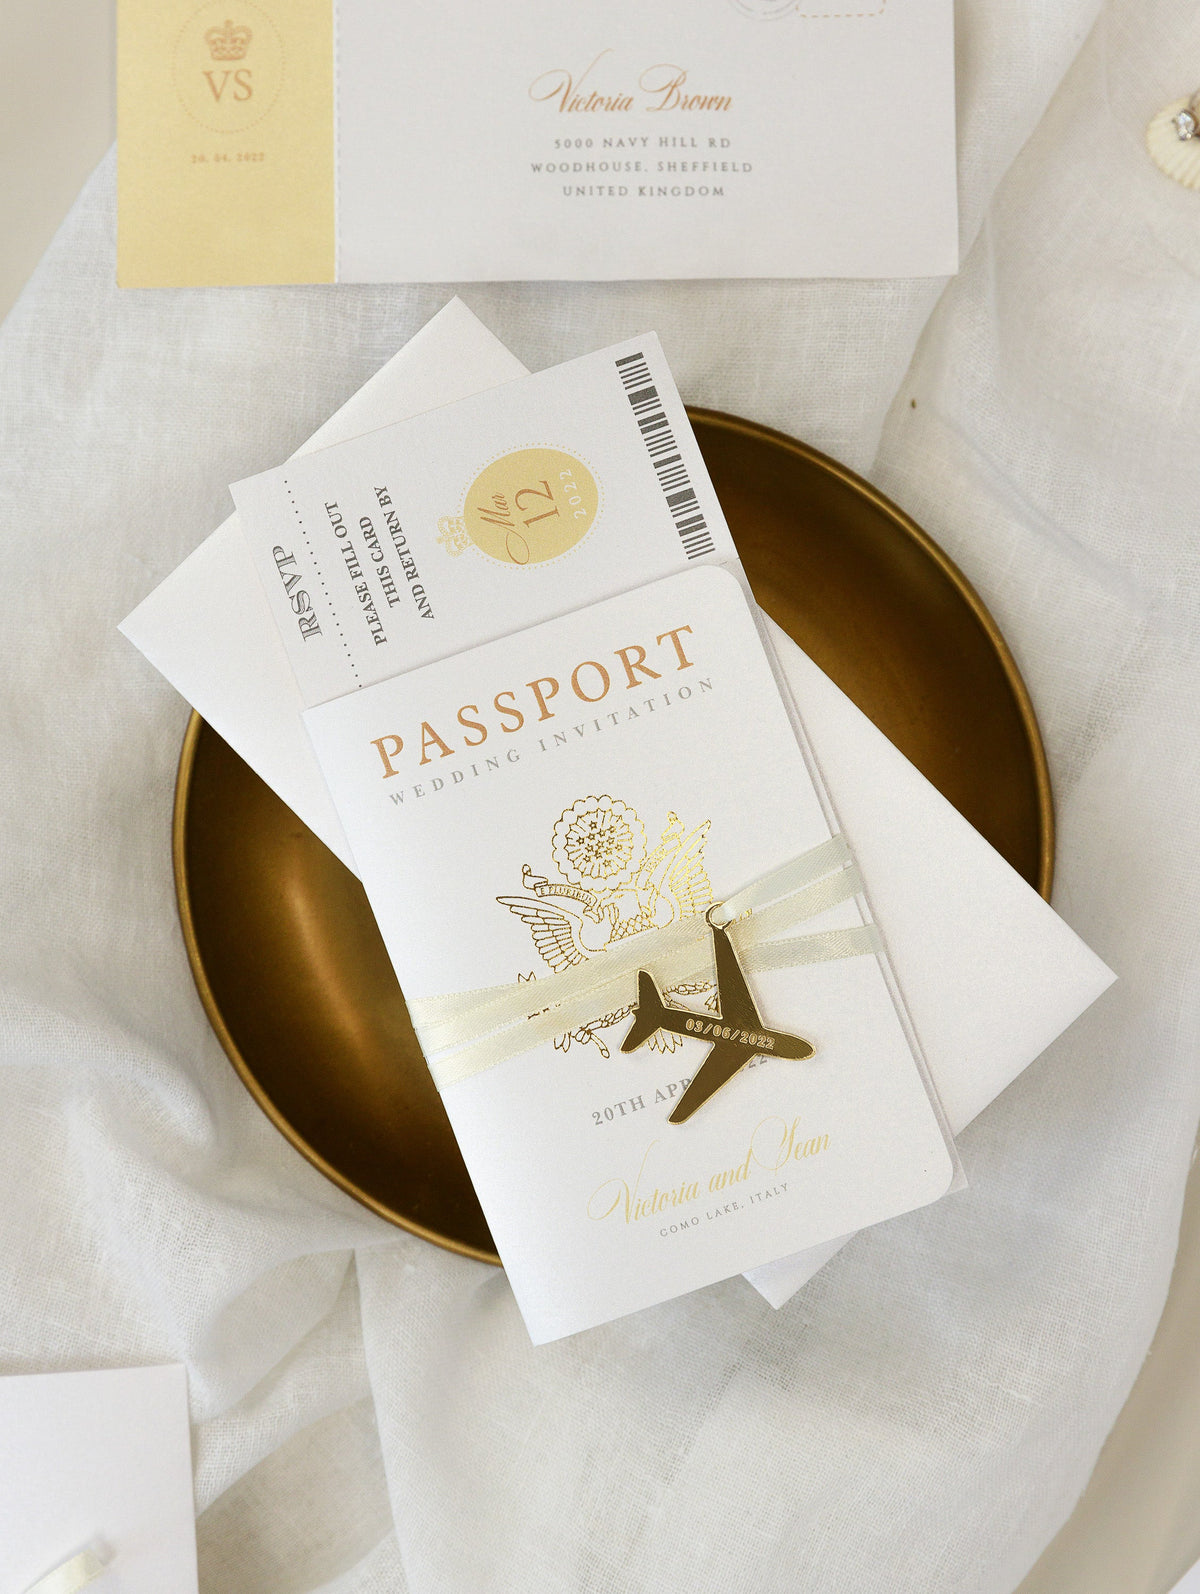 Invitation de mariage au passeport en or - avion gravé de luxe dans le passeport en fleuri